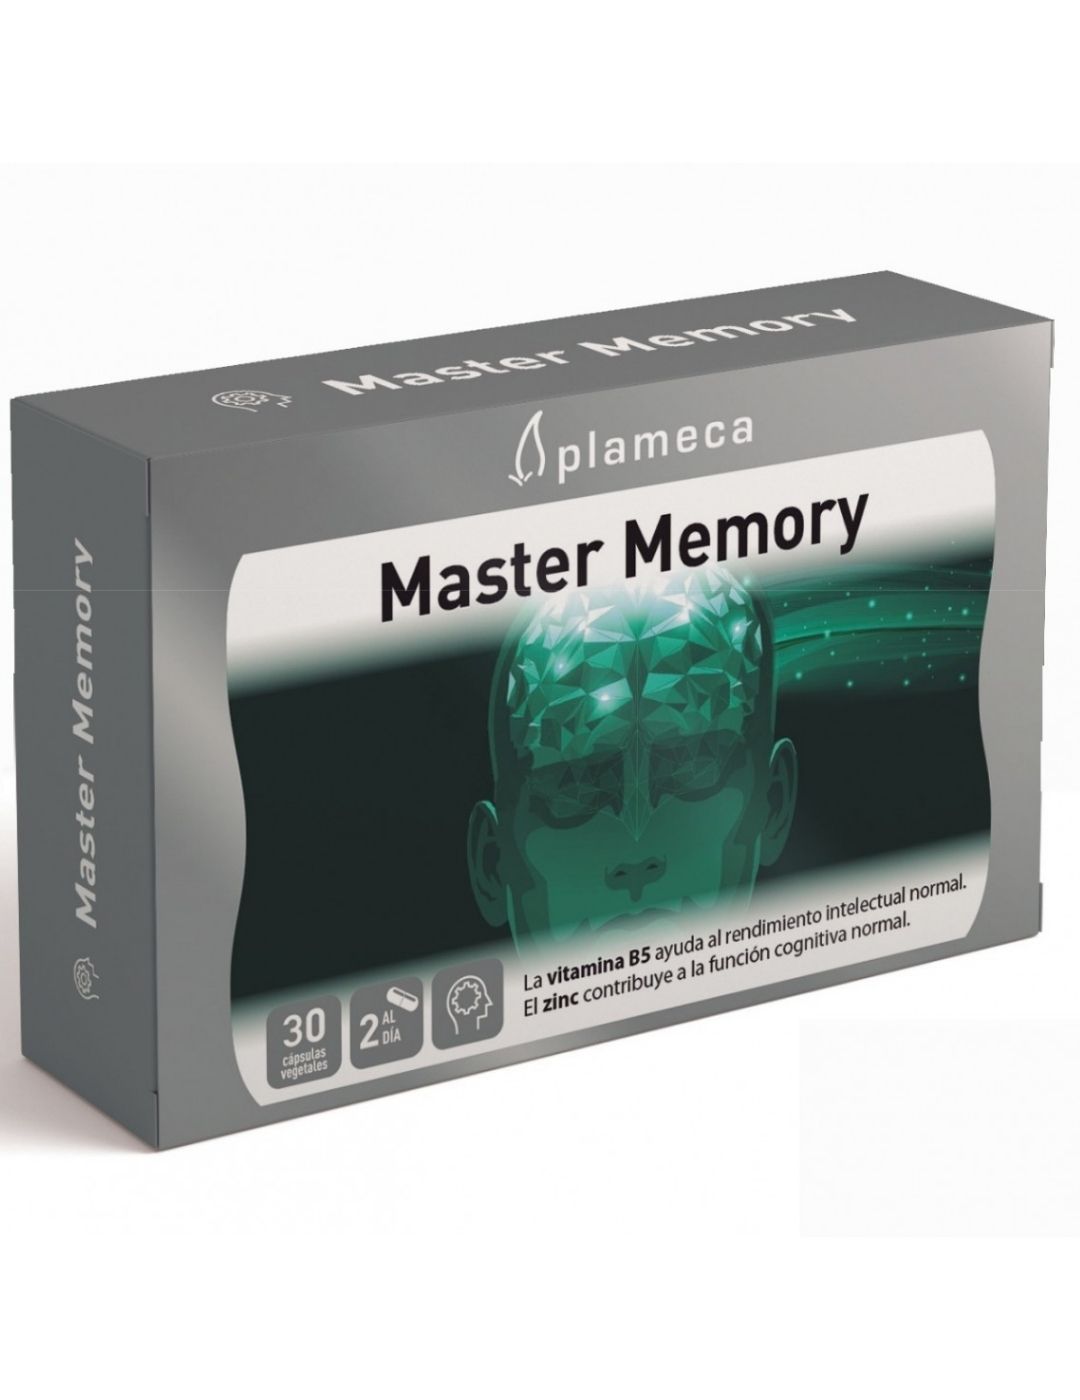 Master memory plameca